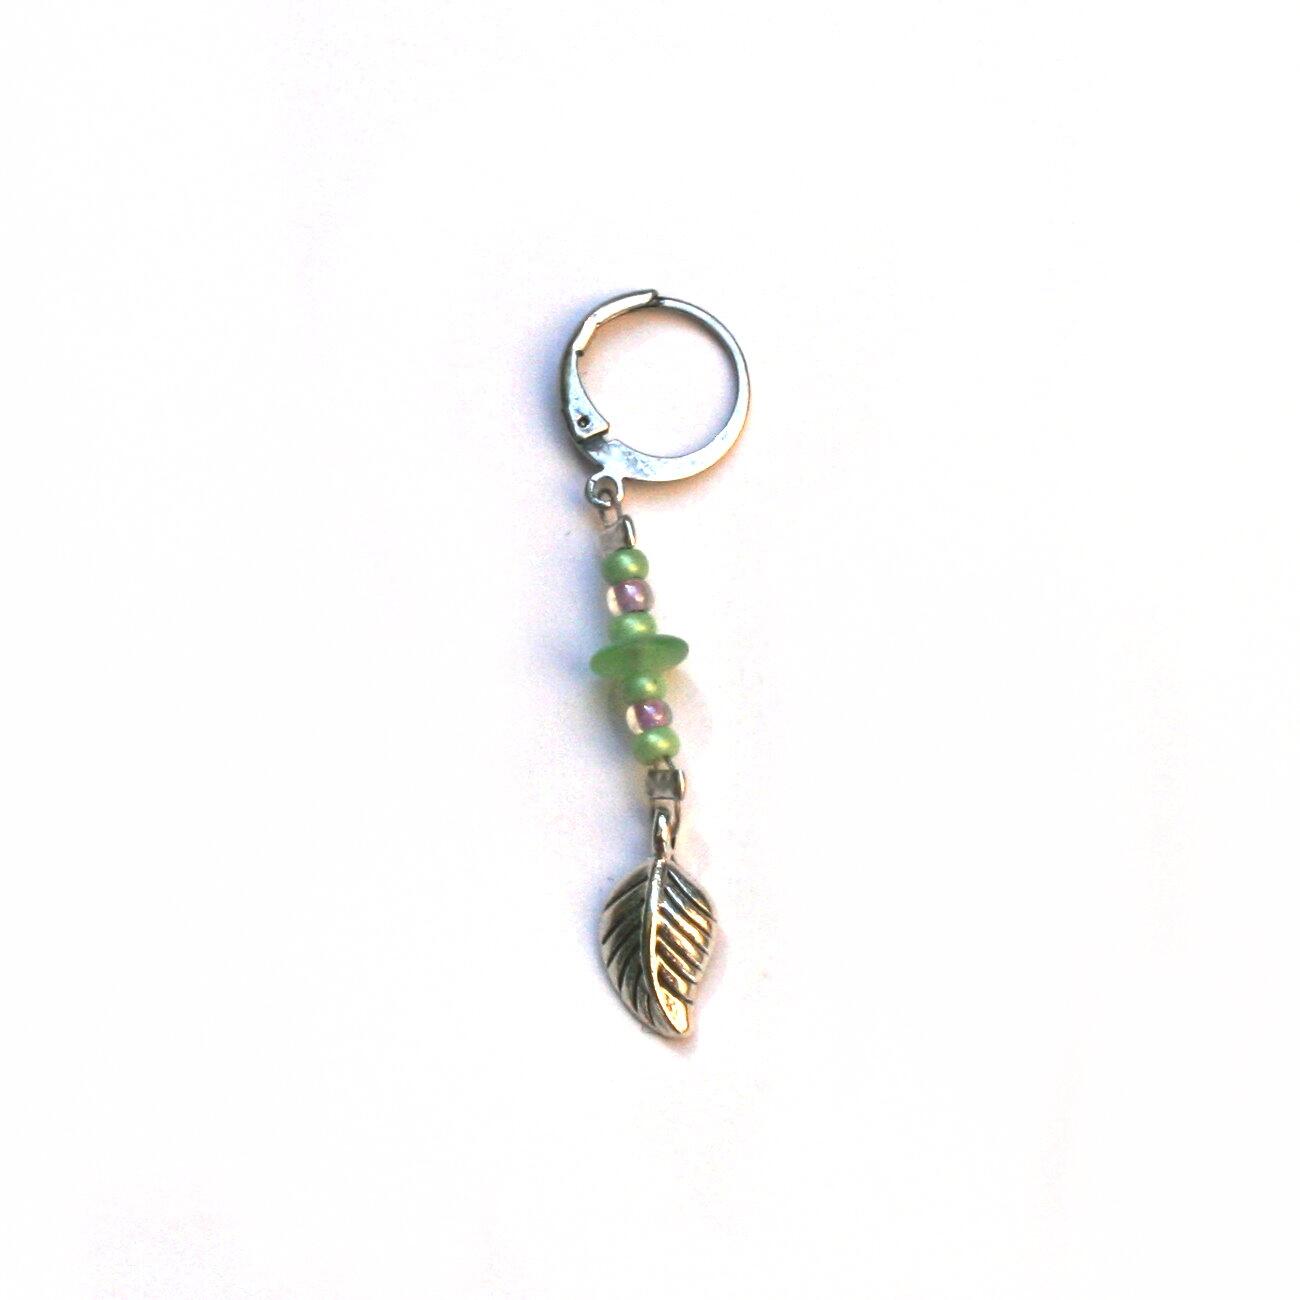 Handgefertigter Maschenmarkierer  "Leafy " mit Perlen und einem silbernen Blatt zum einhängen